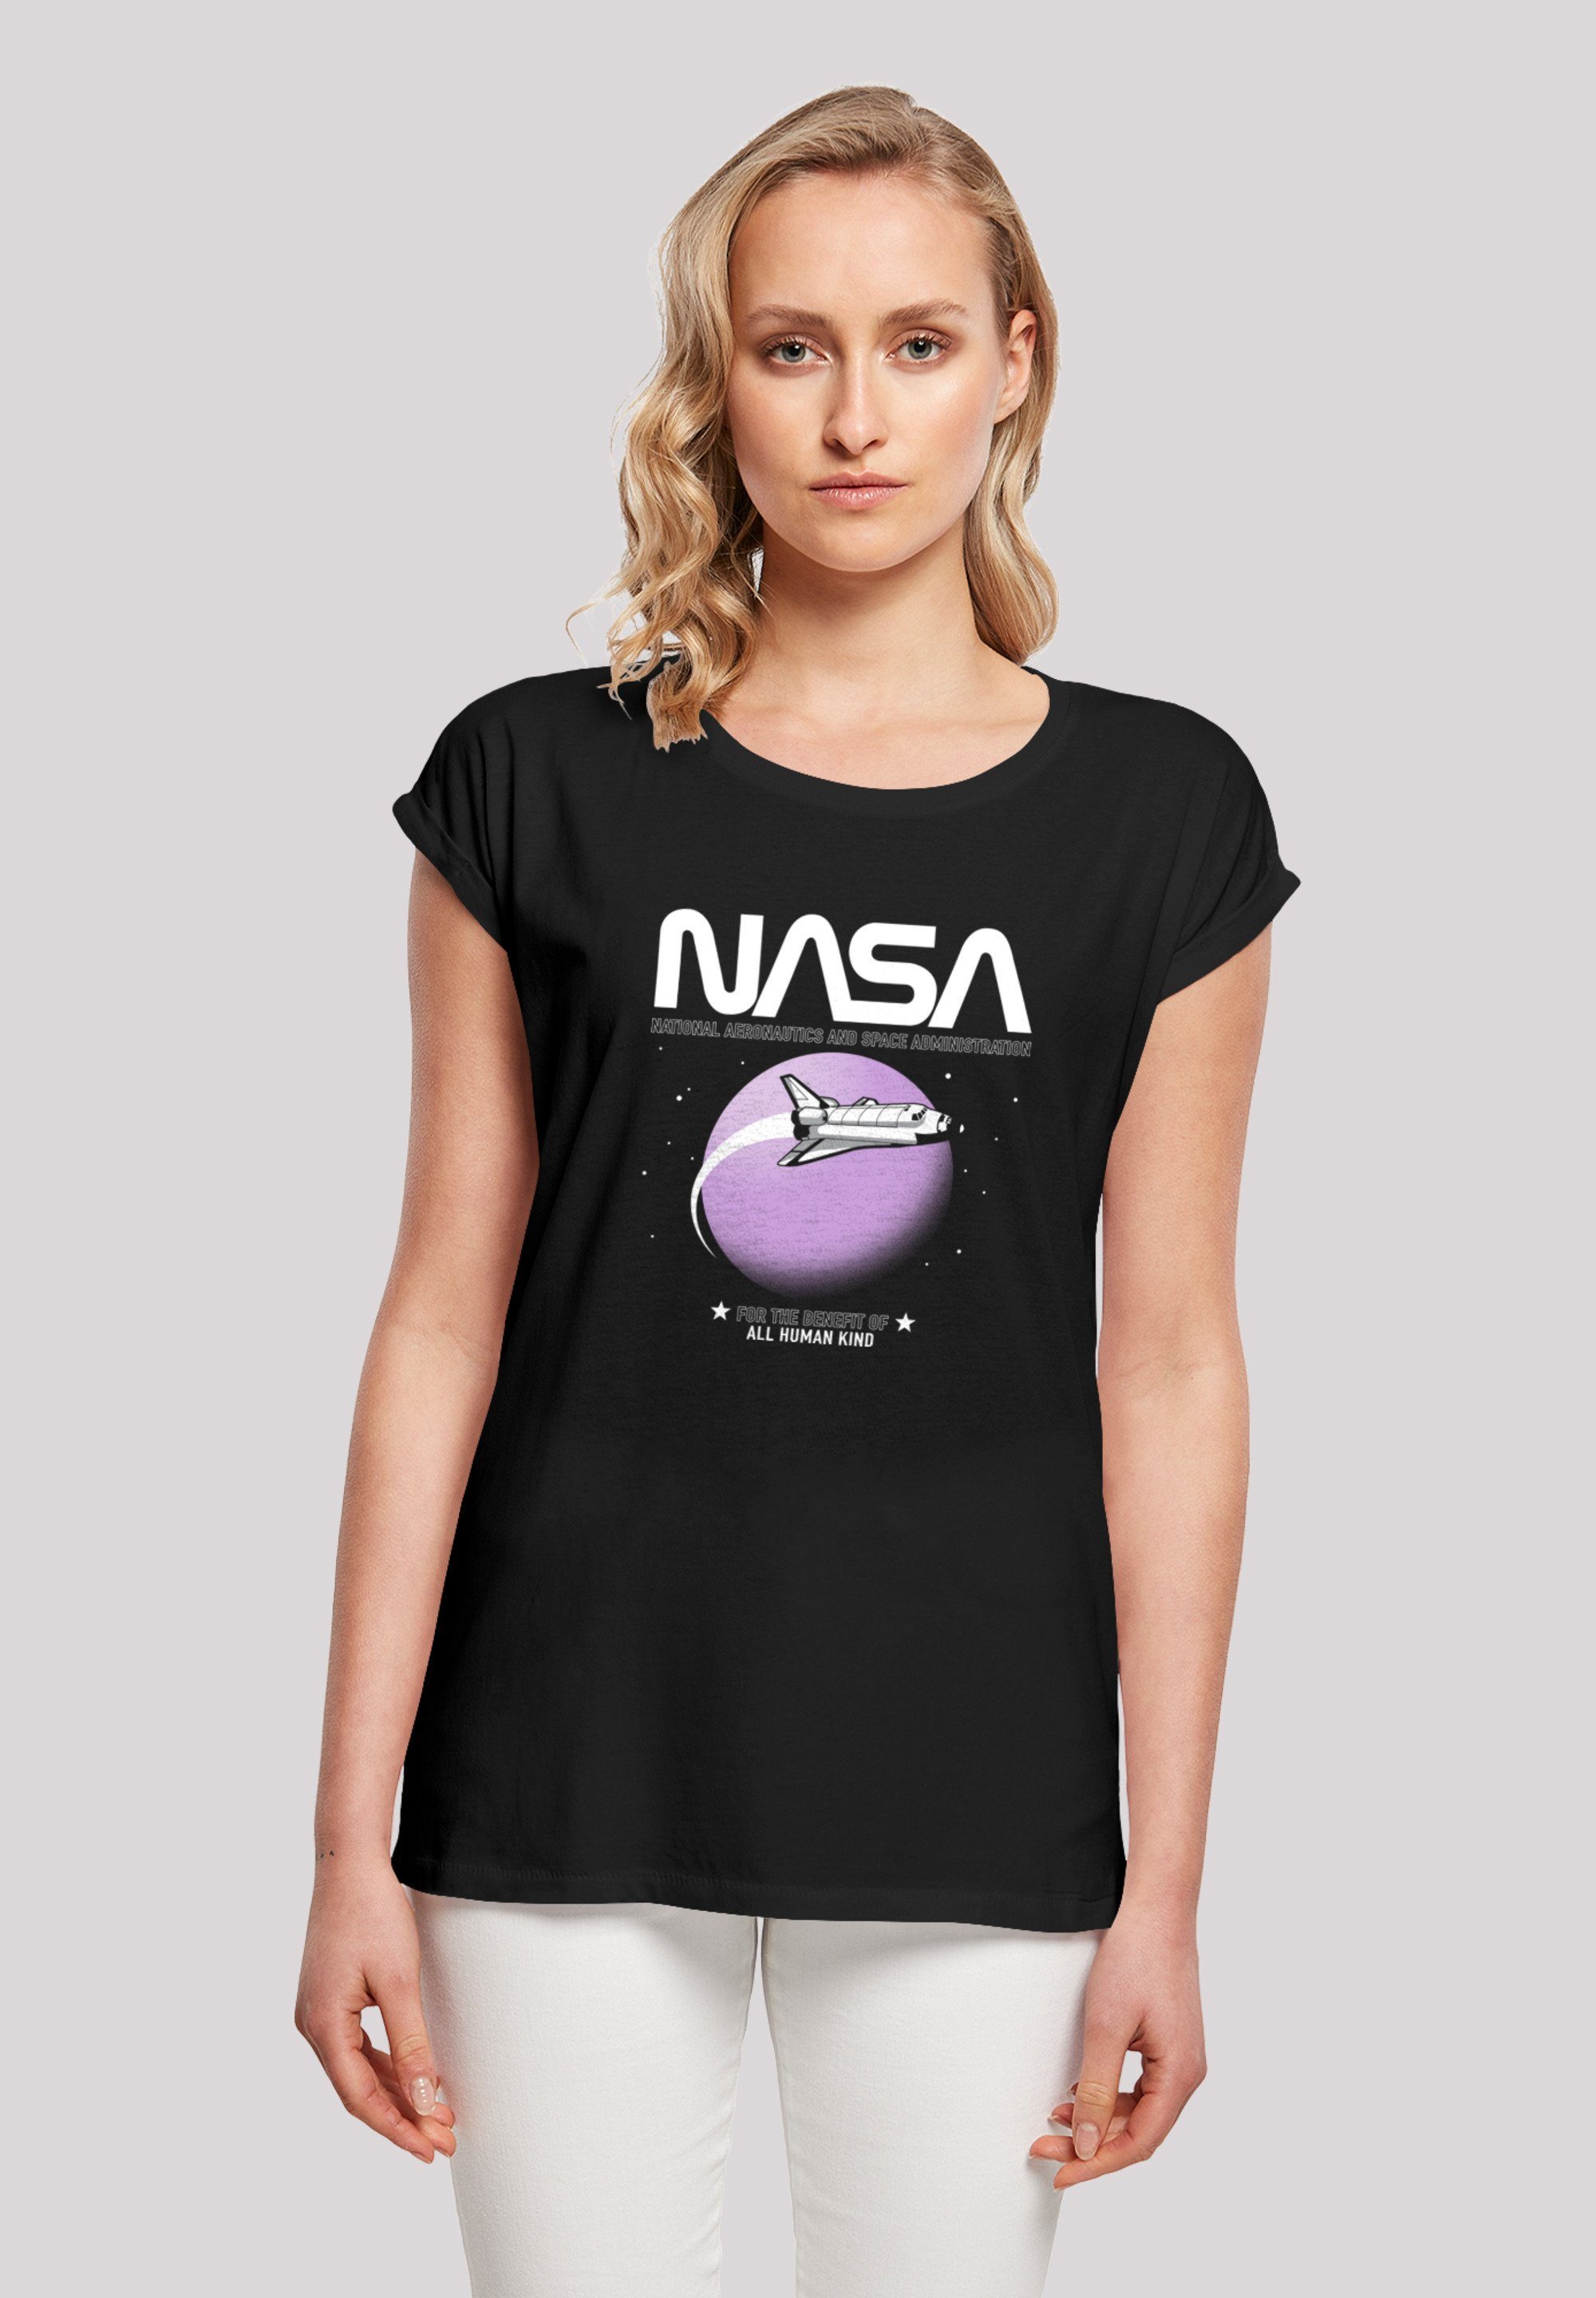 und S Shuttle Orbit\' T-Shirt cm Print, Größe Model groß Das F4NT4STIC ist NASA trägt 170